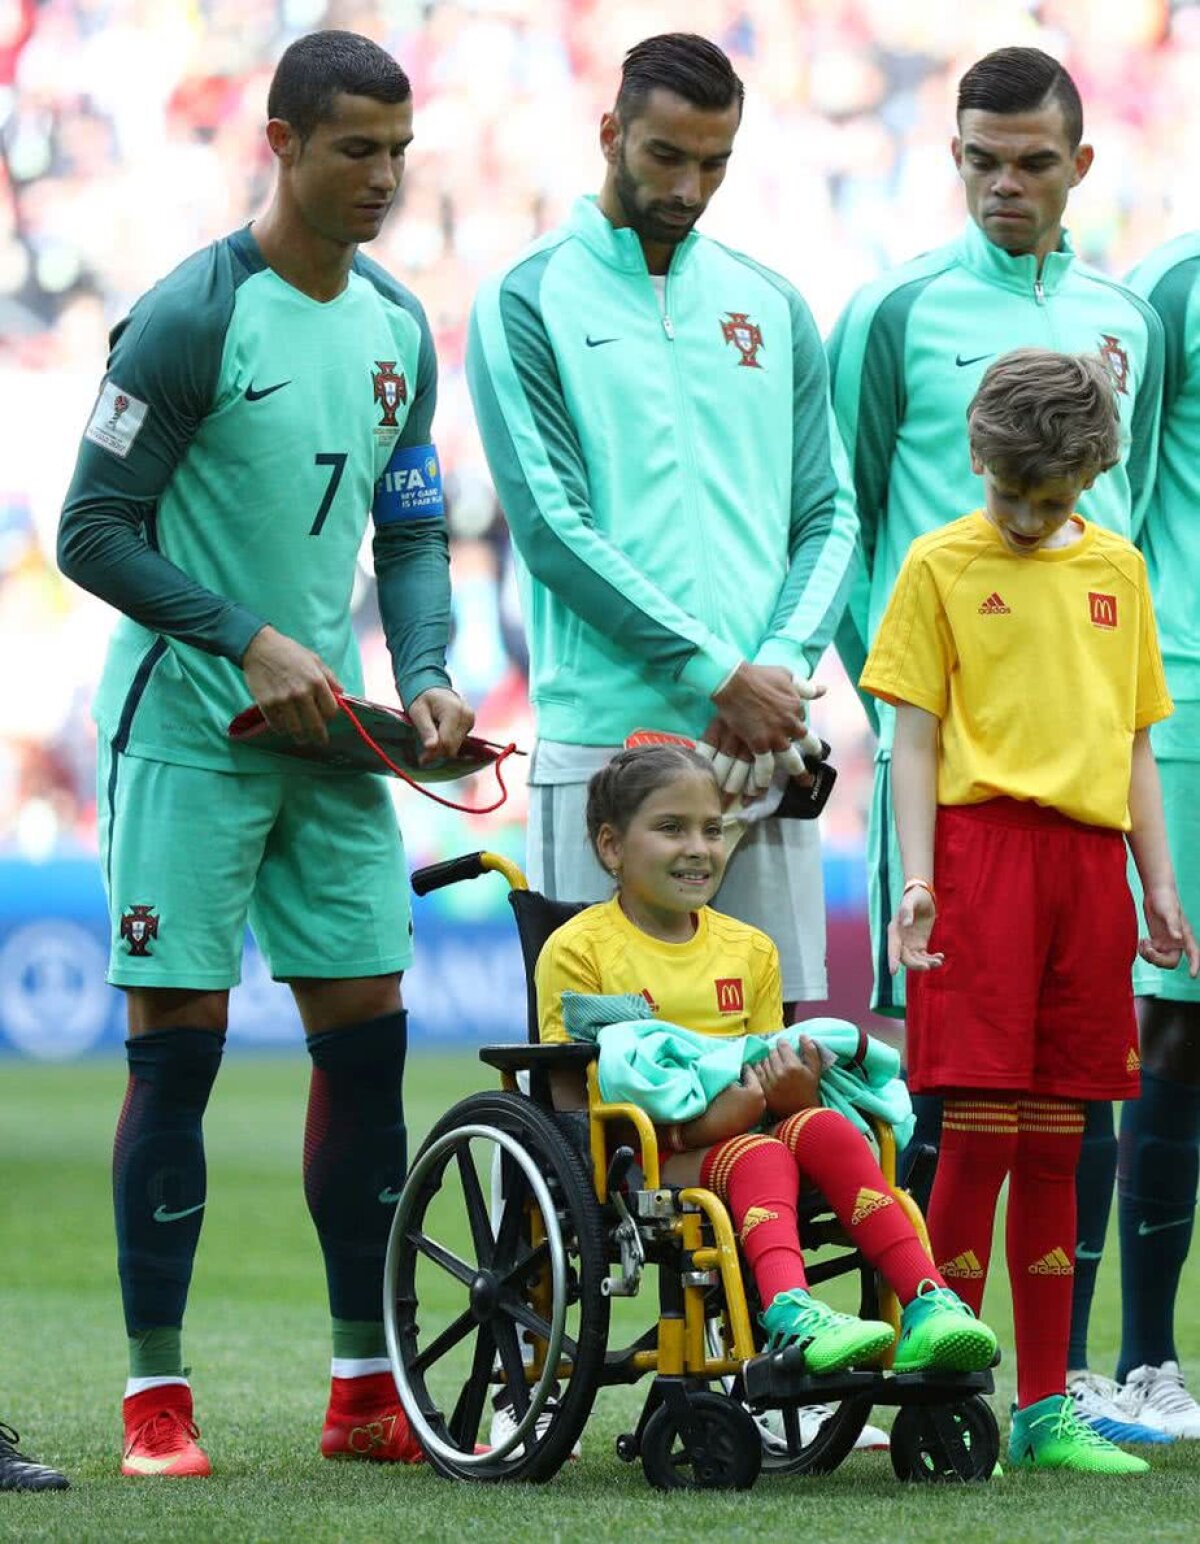 FOTO Puștoaica în scaun cu rotile vrea să își reîntâlnească idolul: "Cristiano Ronaldo mi-a schimbat viața, mi-a dat forța să lupt și să mă ridic!"